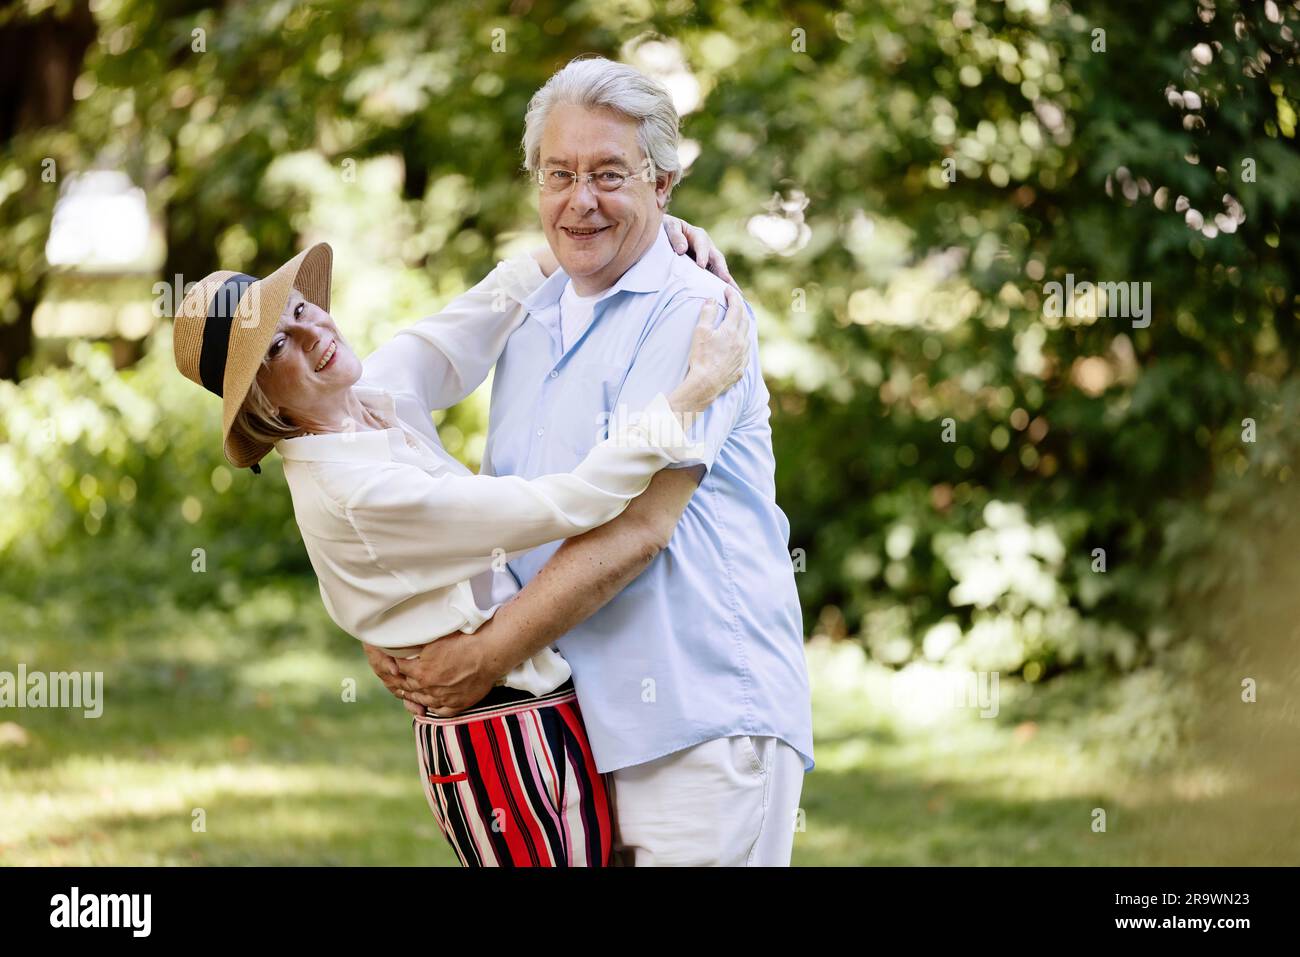 Germania, coppia anziana vestita per l'estate, abbracciata e divertita nella natura Foto Stock